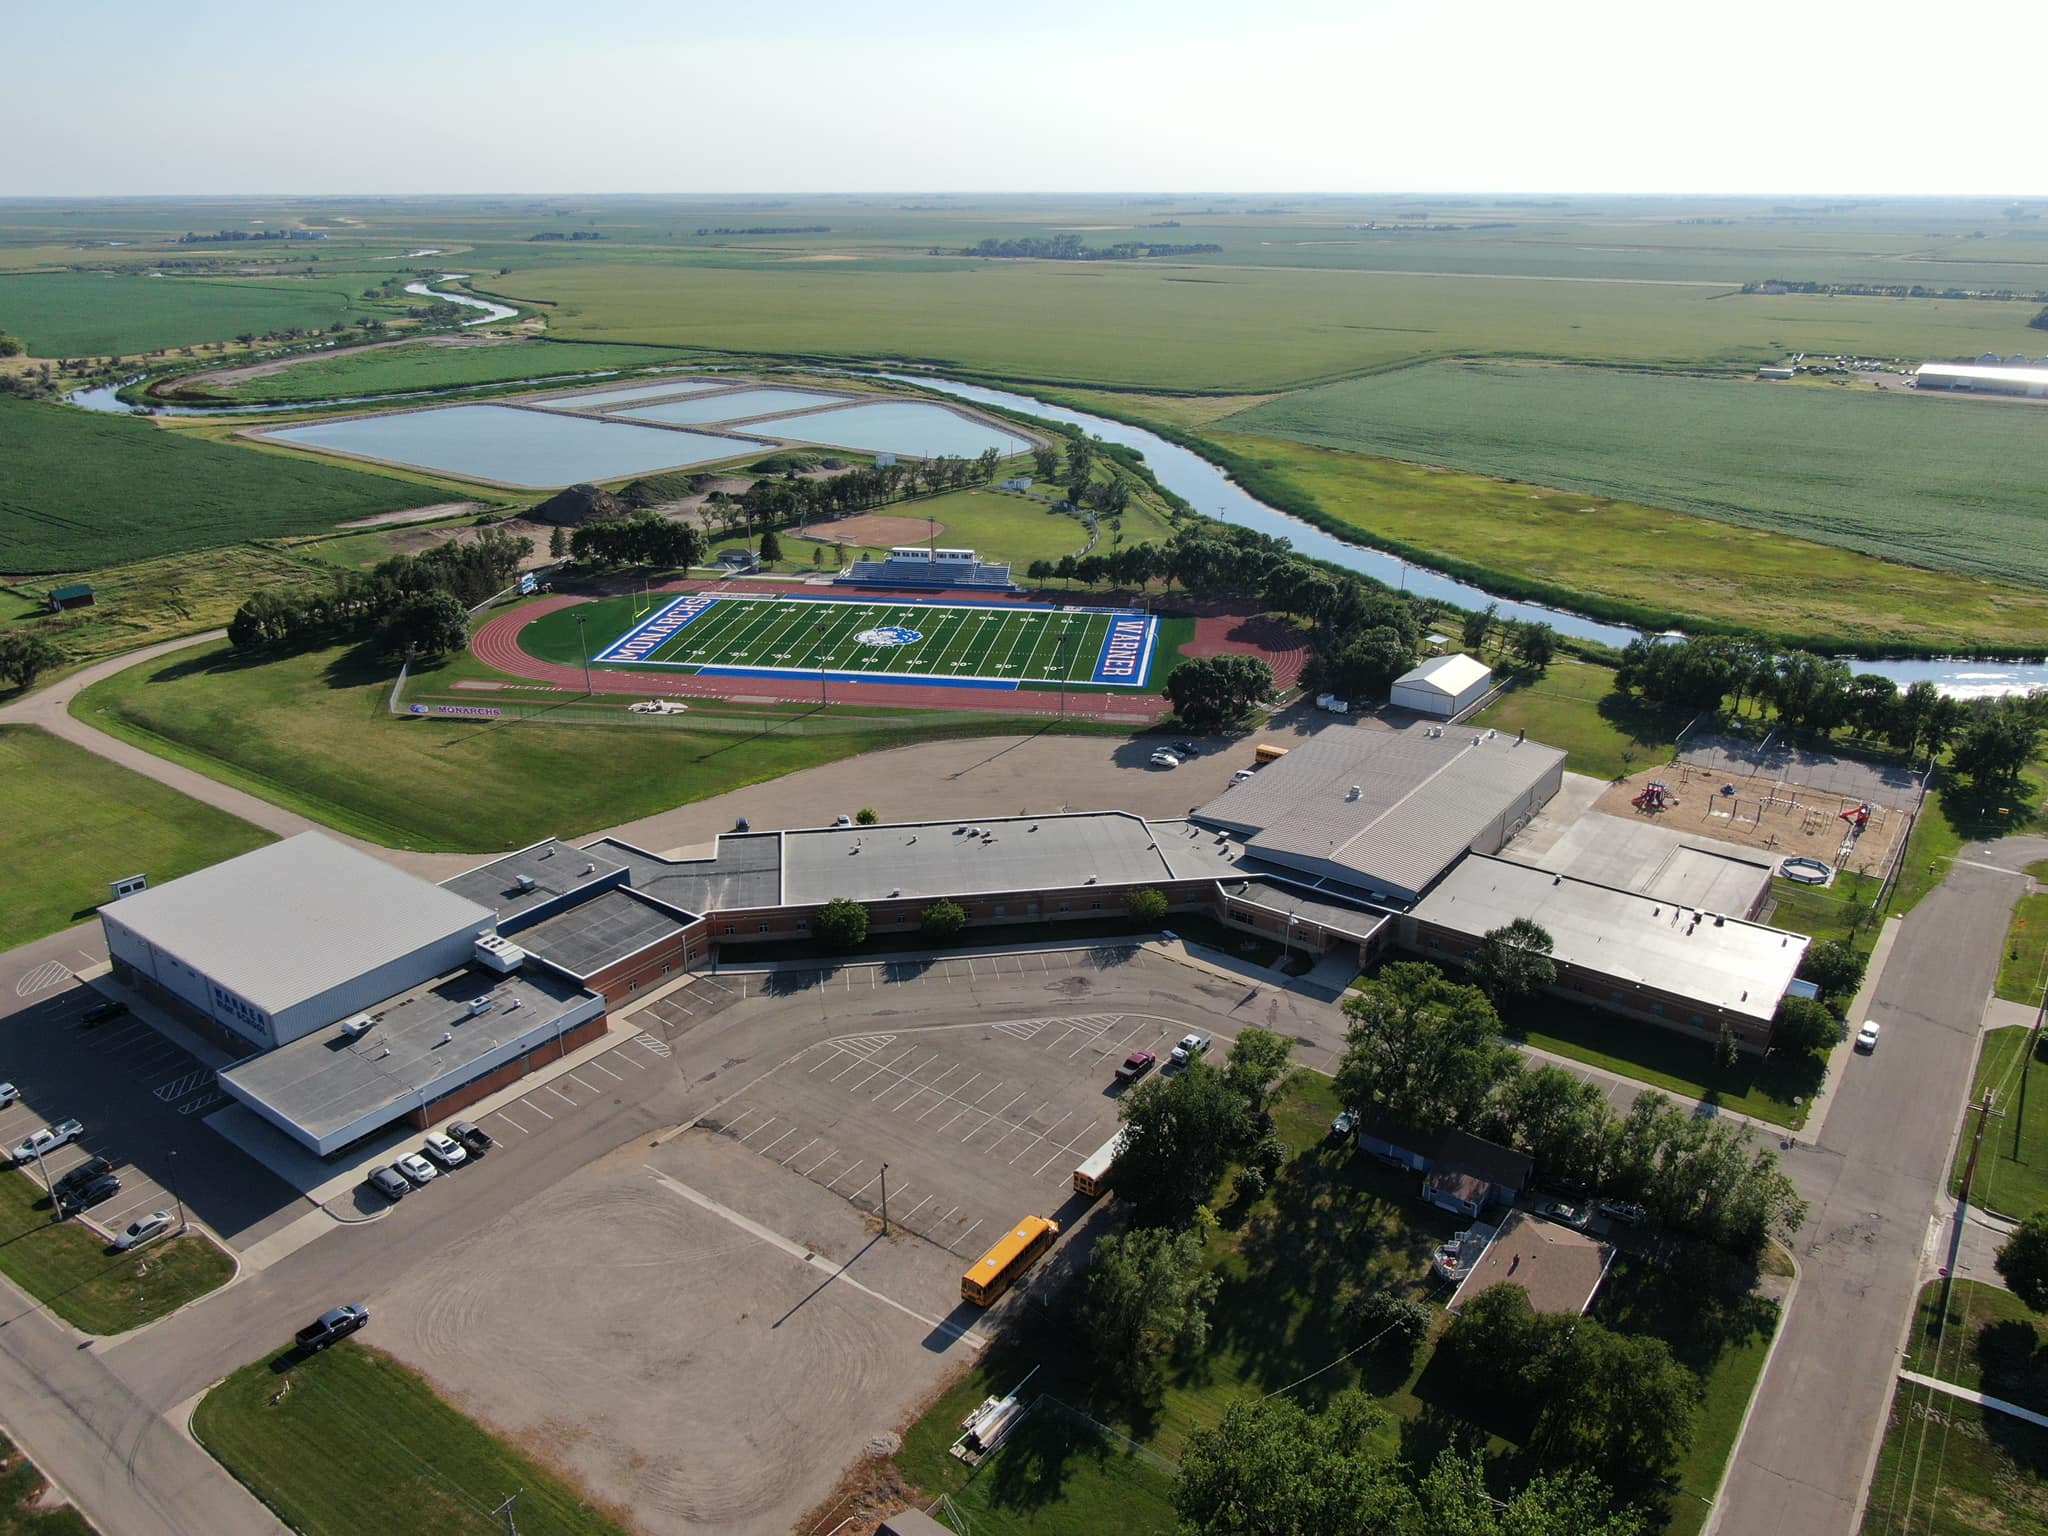 Warner School Aerial photo